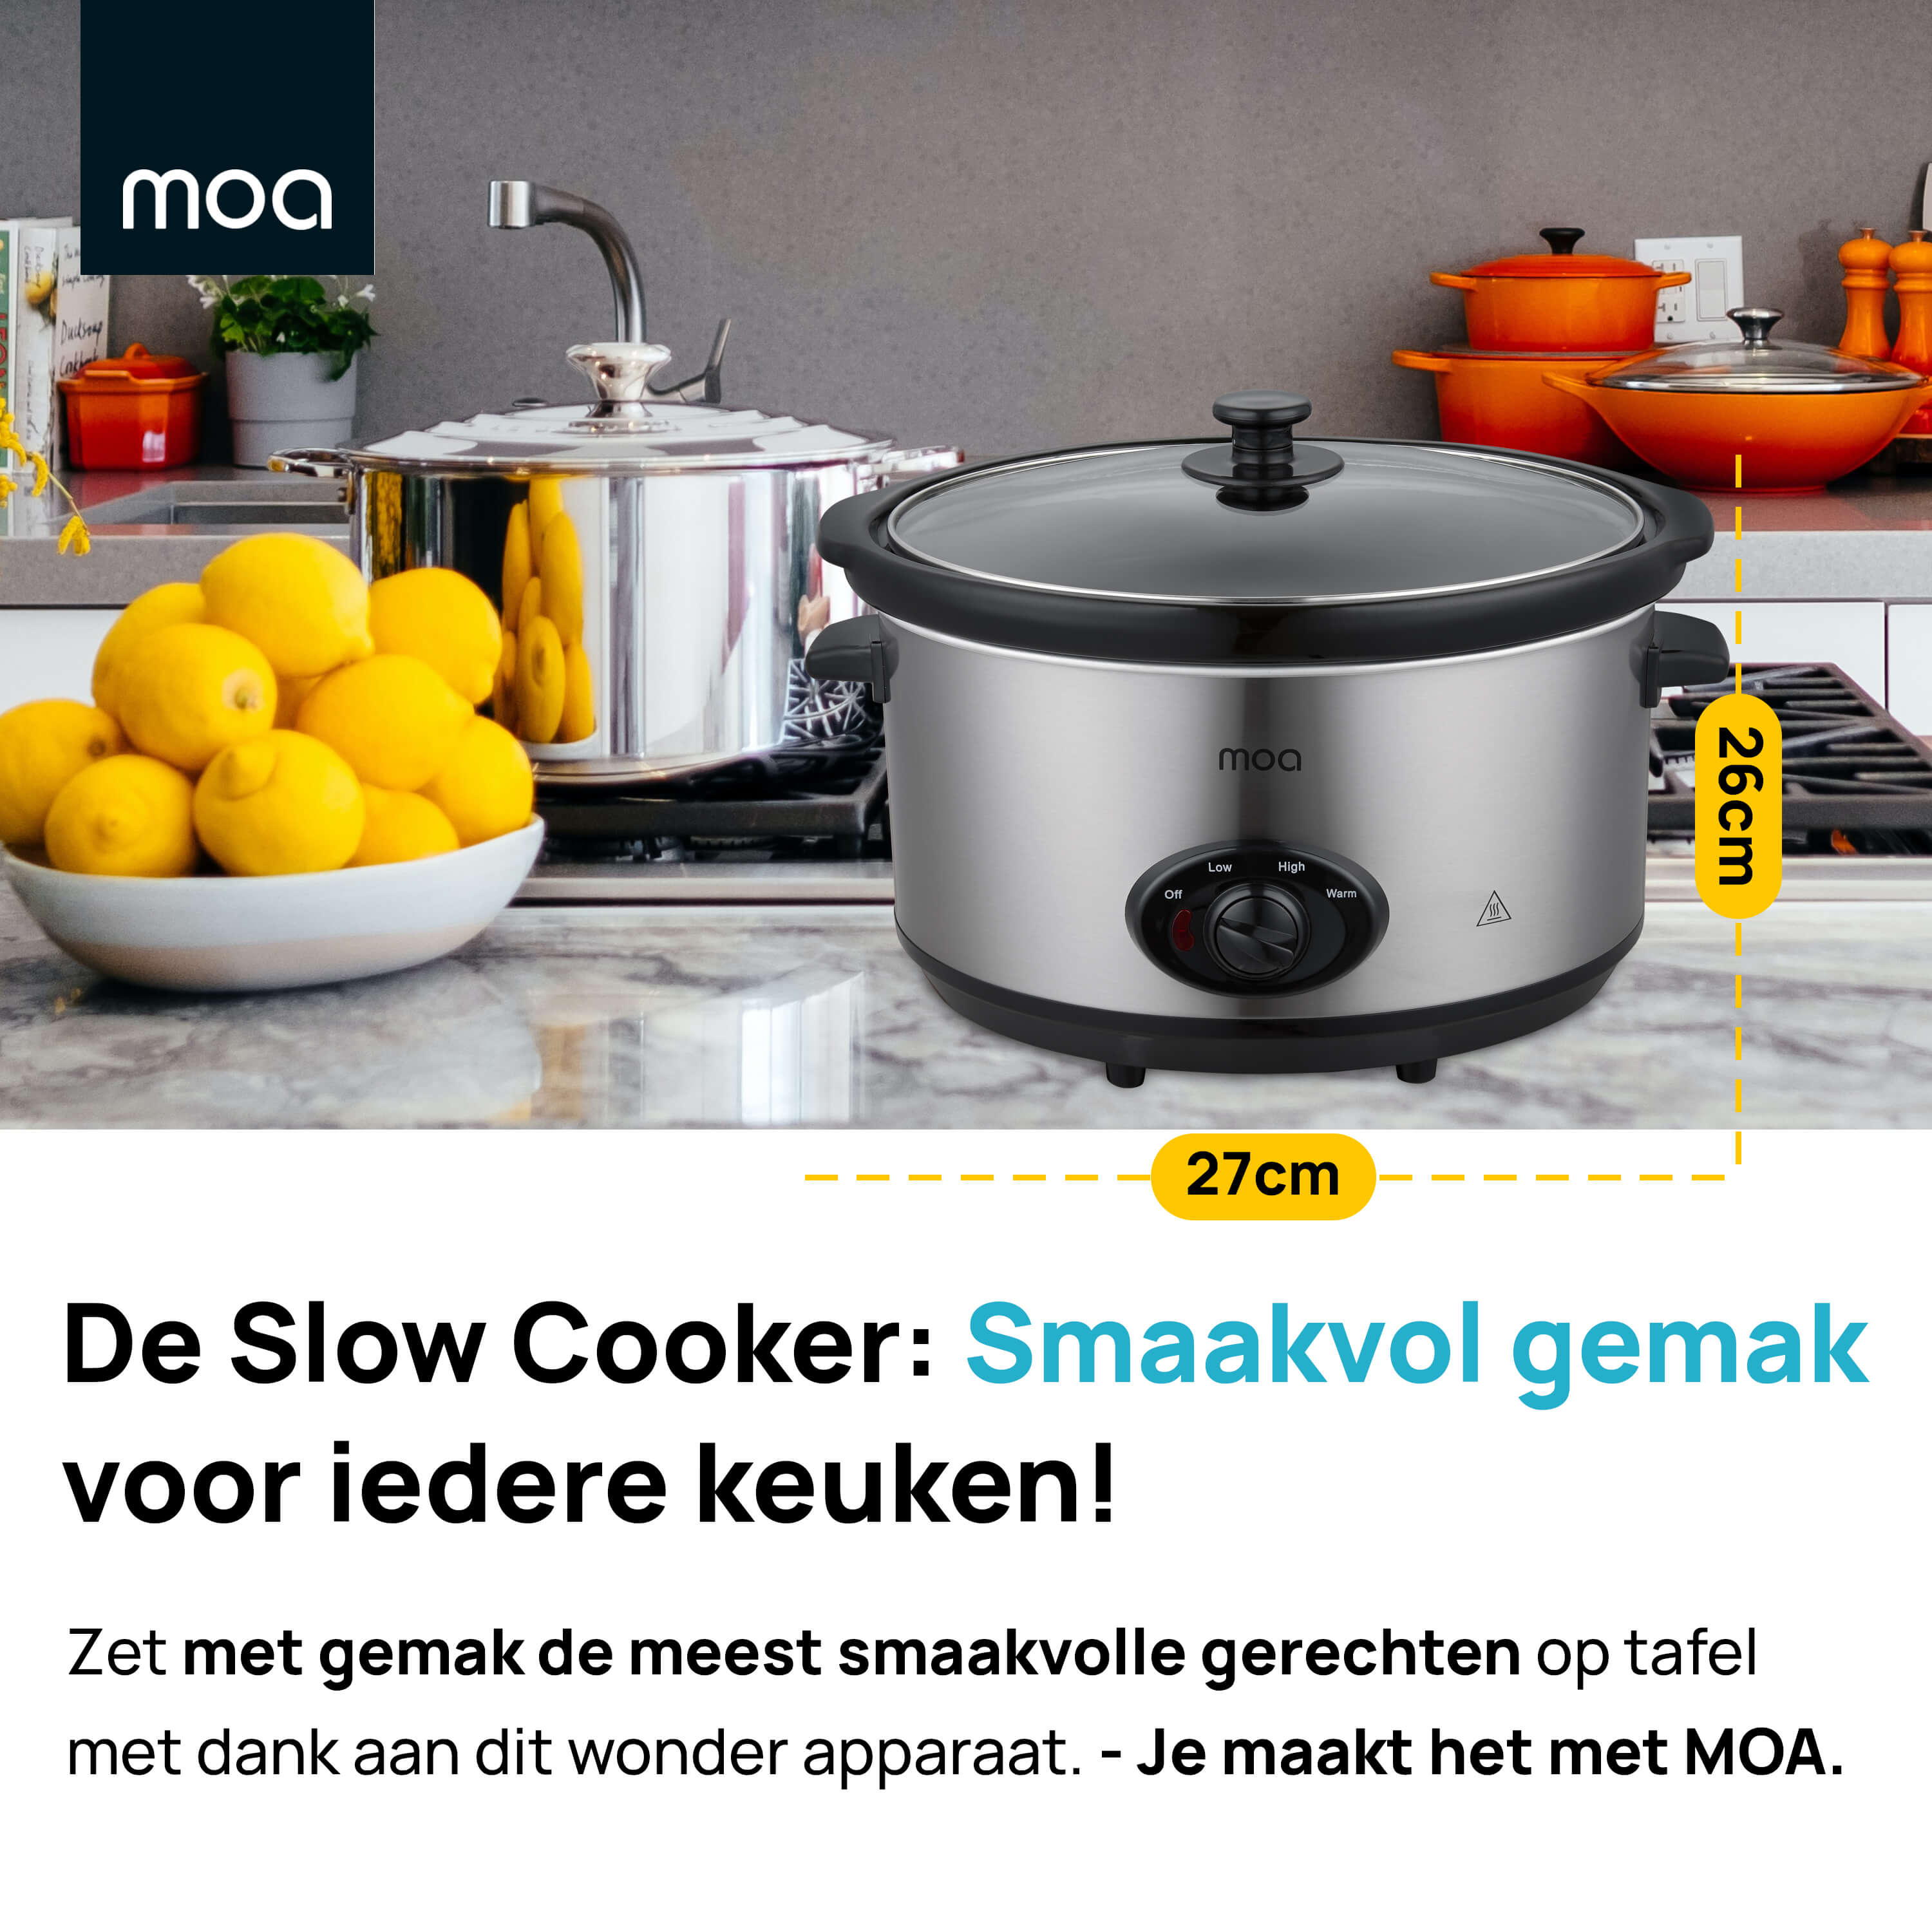 MOA Slowcooker - Zilverkleurig - SC65